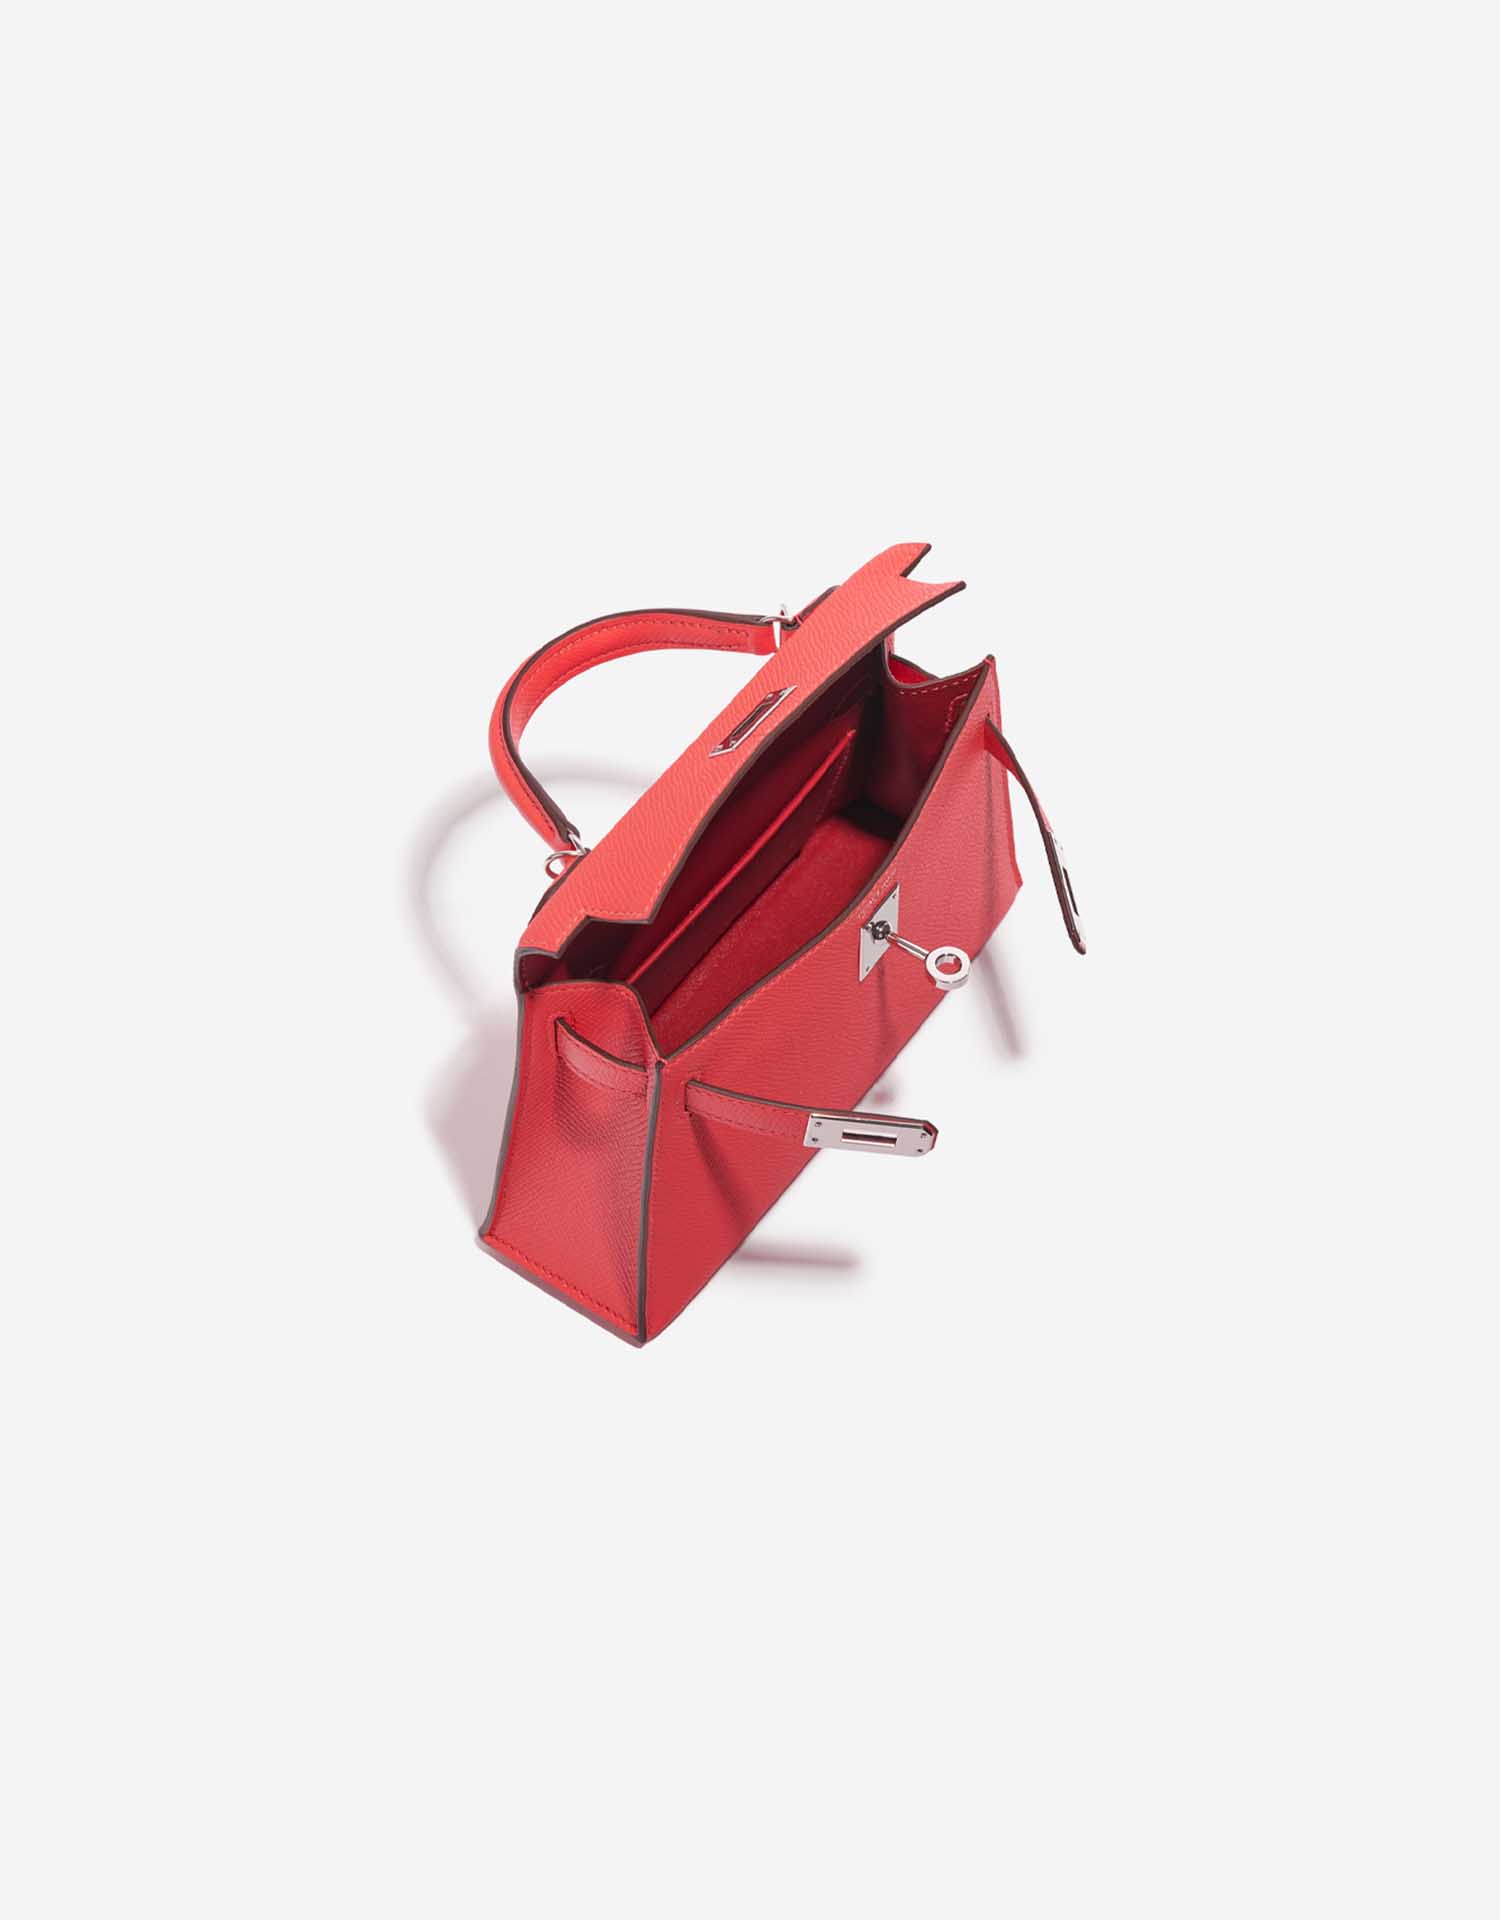 Gebrauchte Hermès Tasche Kelly Mini Epsom Limited Edition Verso Rose Jaipur / Rouge Vif Rose Inside | Verkaufen Sie Ihre Designer-Tasche auf Saclab.com